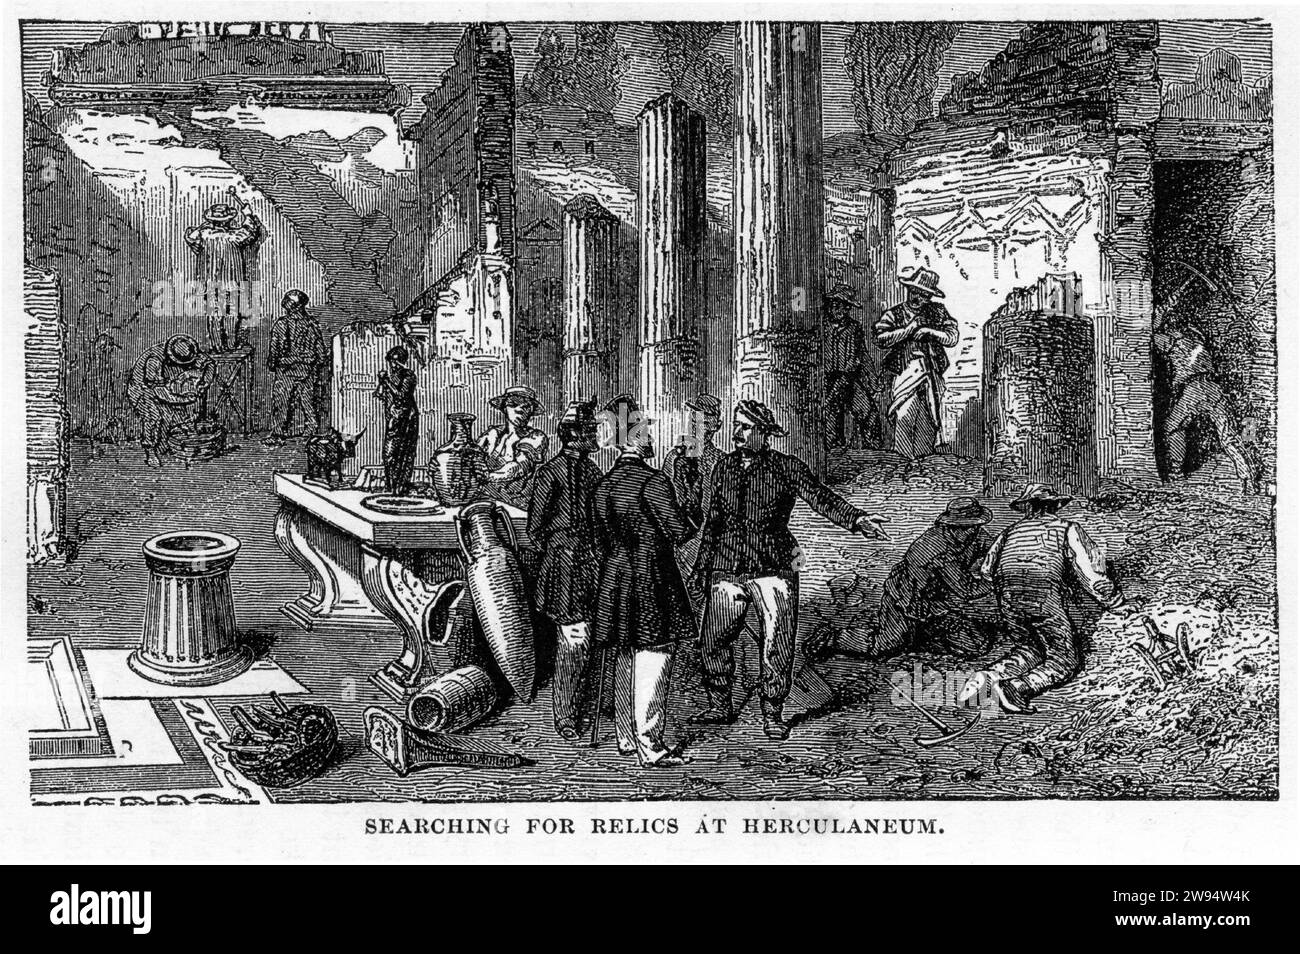 Grabado de visitantes en busca de reliquias en Herculano, del Mundo Subterráneo, hacia 1878 Foto de stock